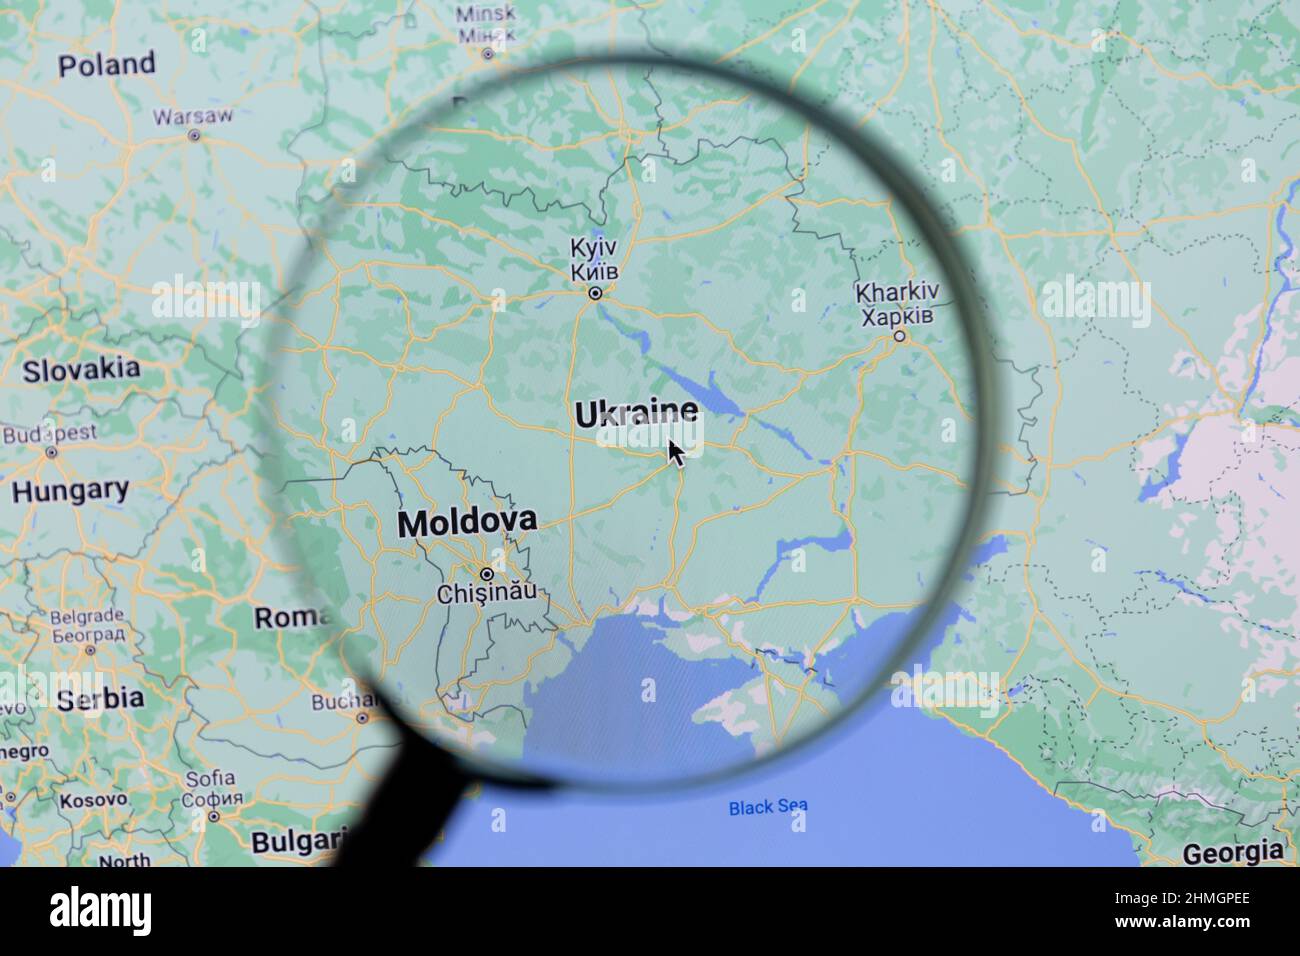 Ostersund, Suecia - 23 de enero de 2022: Ucrania en Google Maps. Ucrania es un país de Europa del Este. Foto de stock